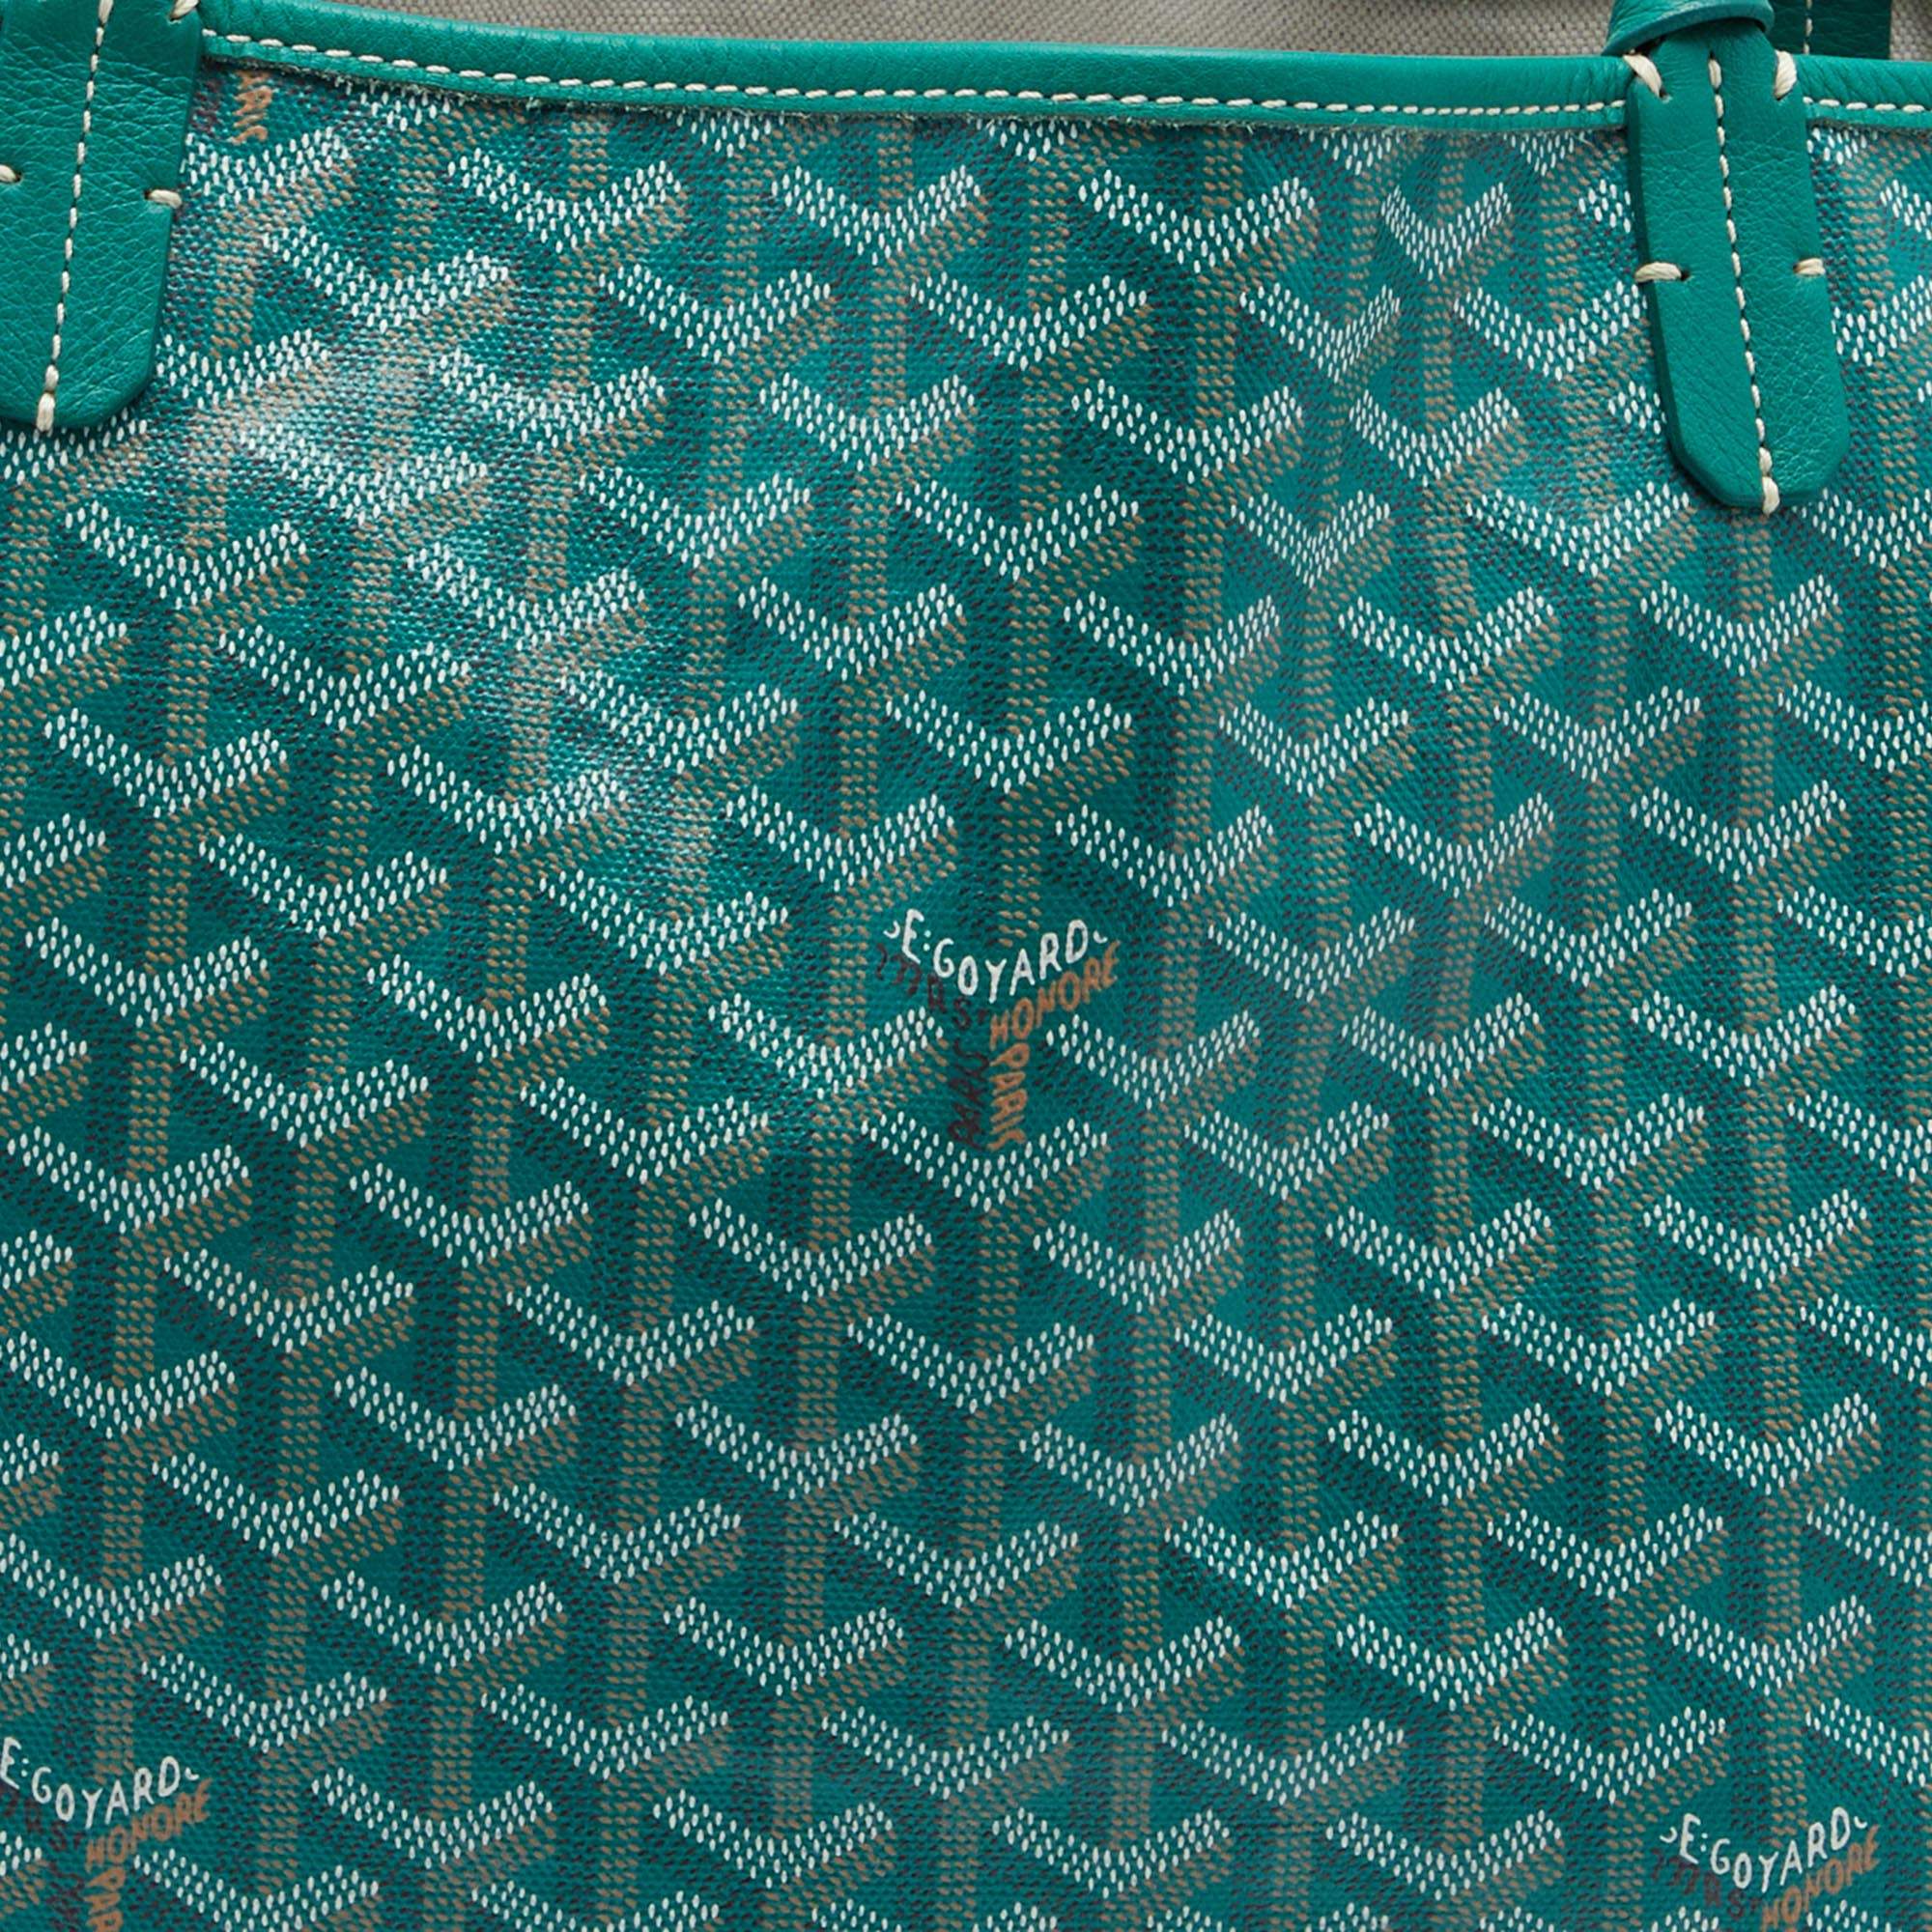 Saint-louis cloth tote Goyard Green in Cloth - 28861316